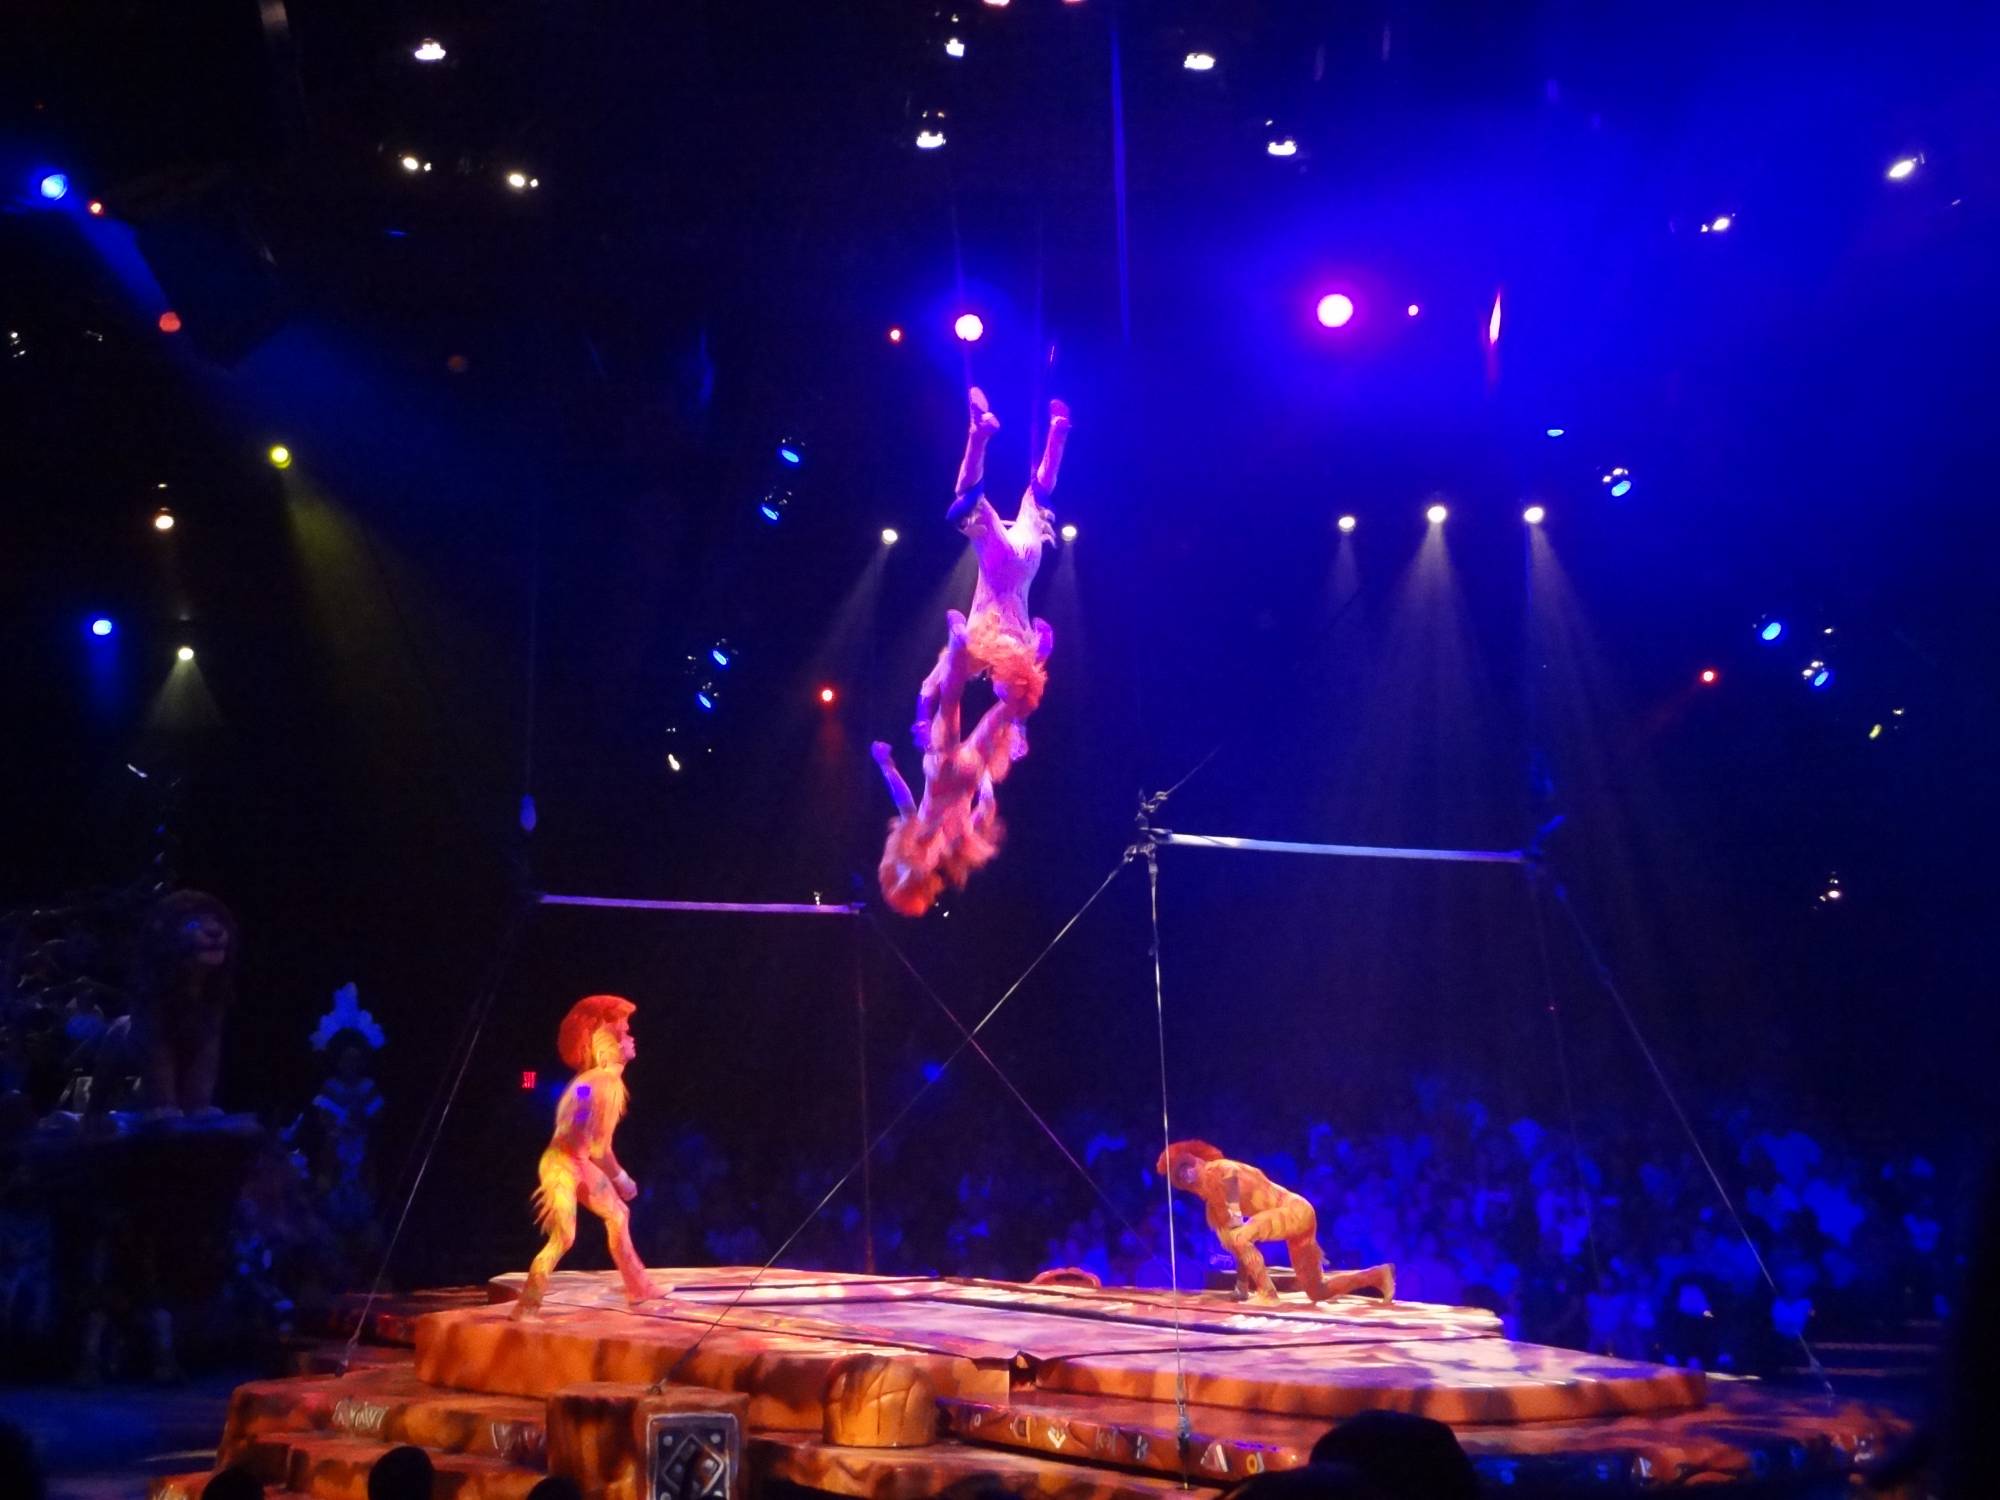 Disney's Animal Kingdom - Lion King Show